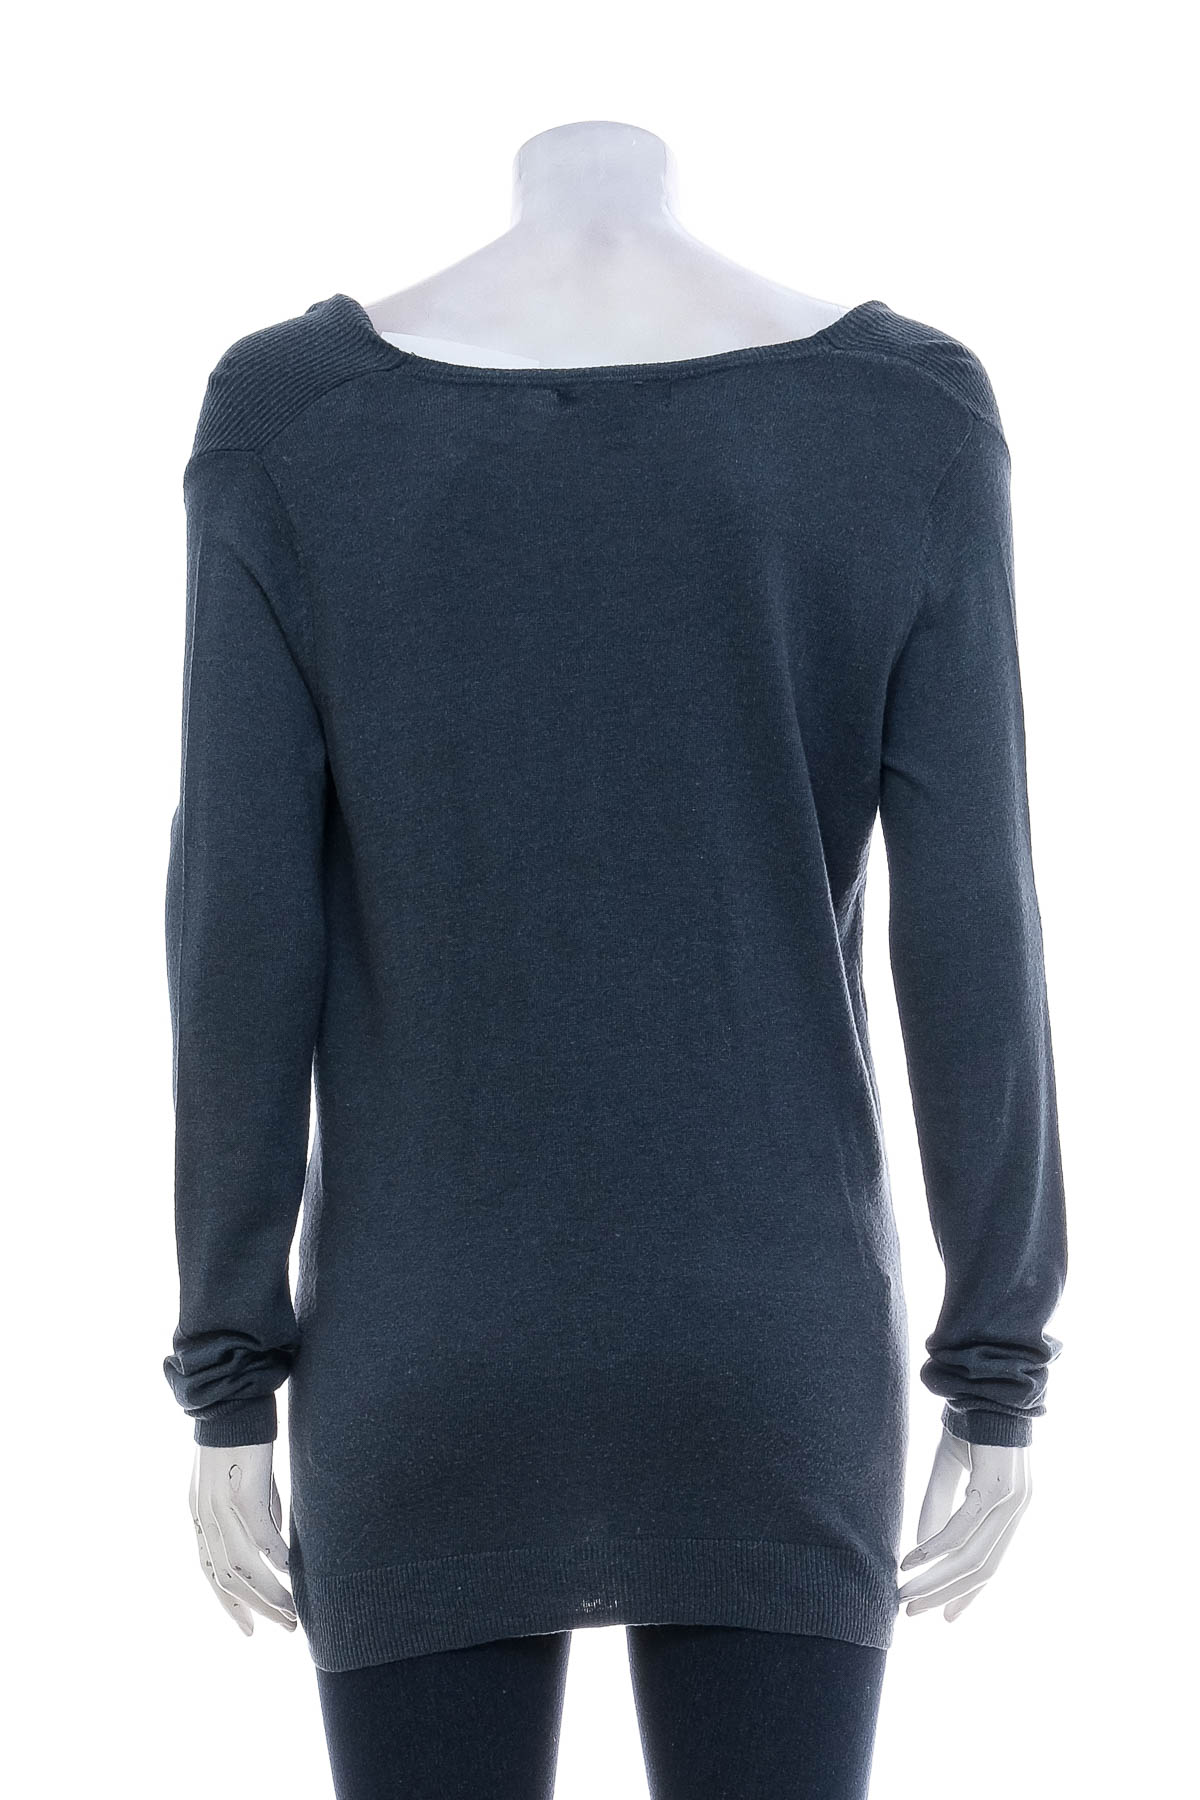 Women's sweater - Massimo - 1